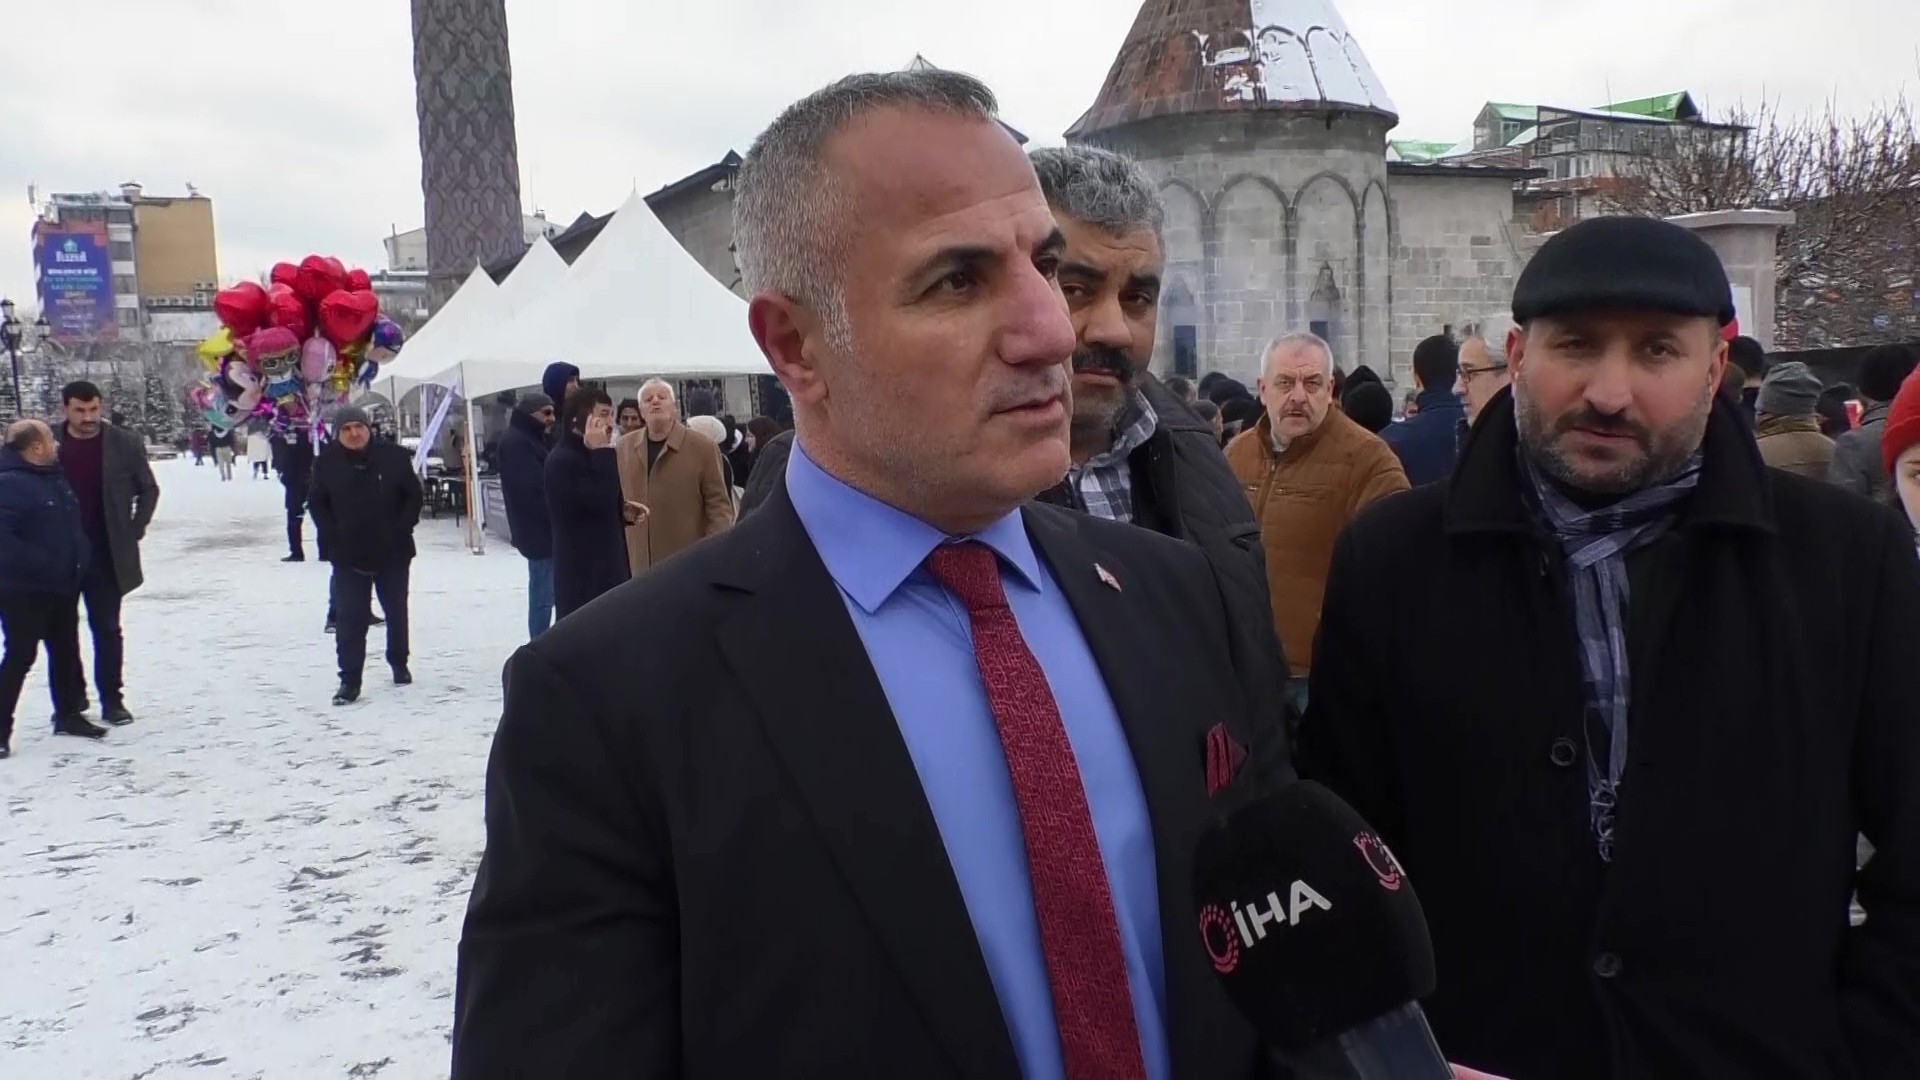 İspir Kuru fasulye ve kültür festivali açılışı Erzurum’dan yapıldı